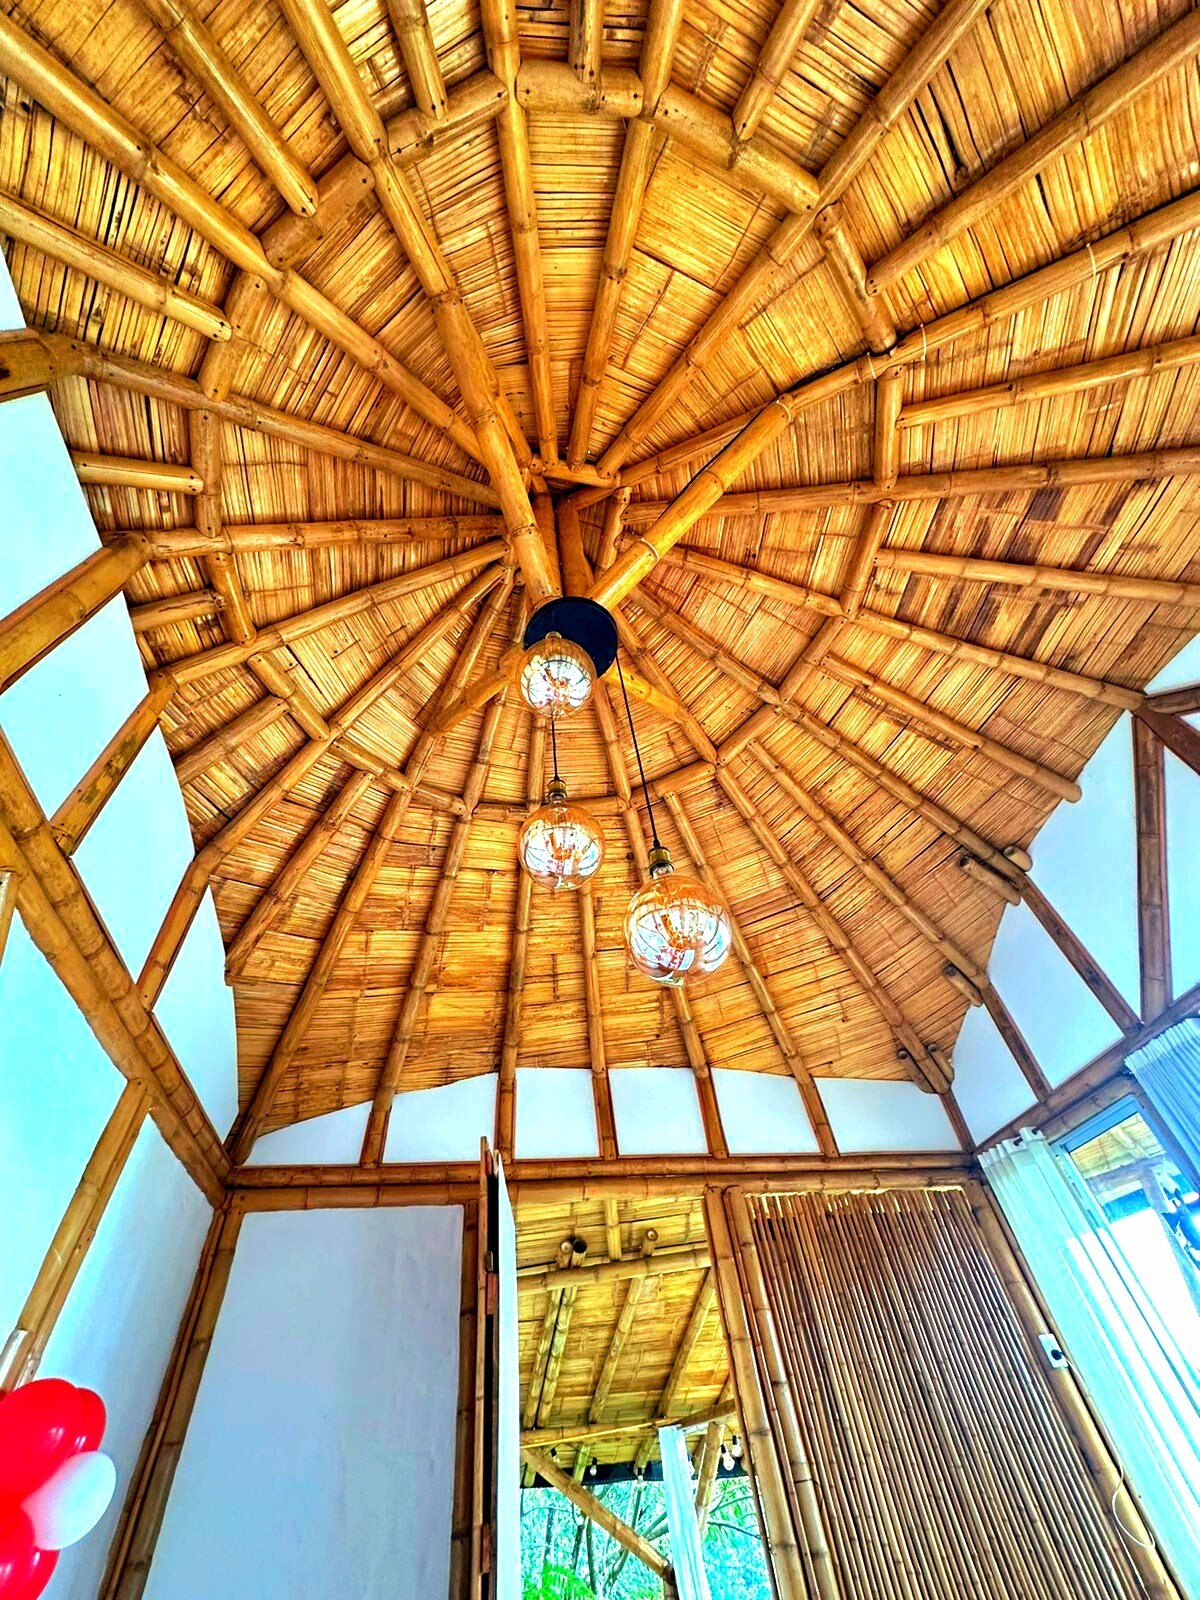 Glamping ORO
Espectacular construccion en Bambu